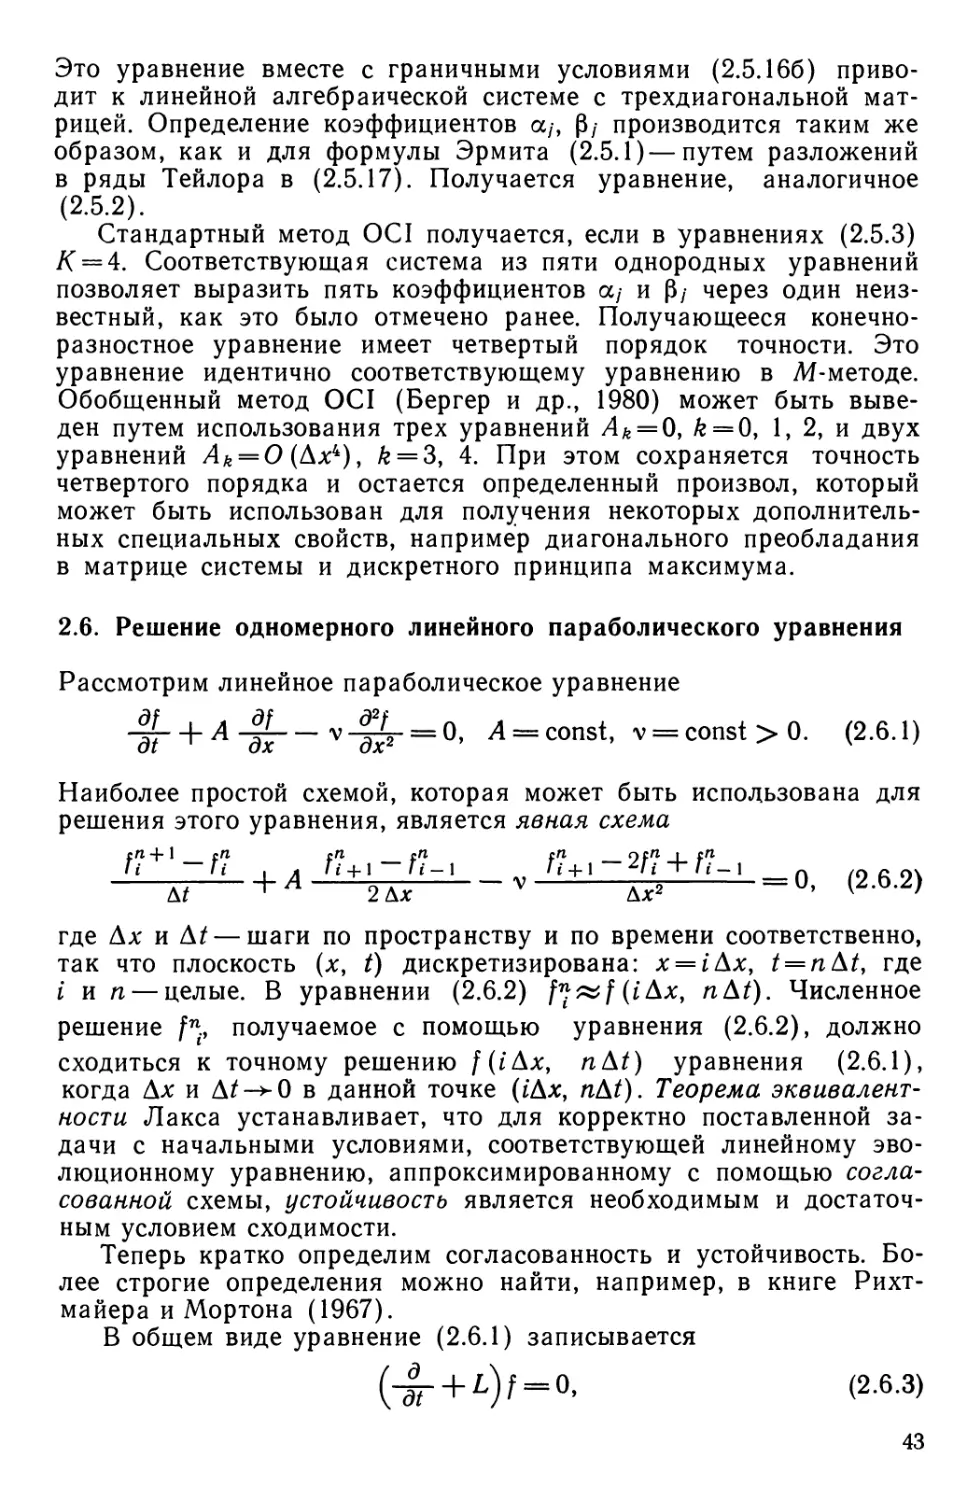 2.6. Решение одномерного линейного параболического уравнения